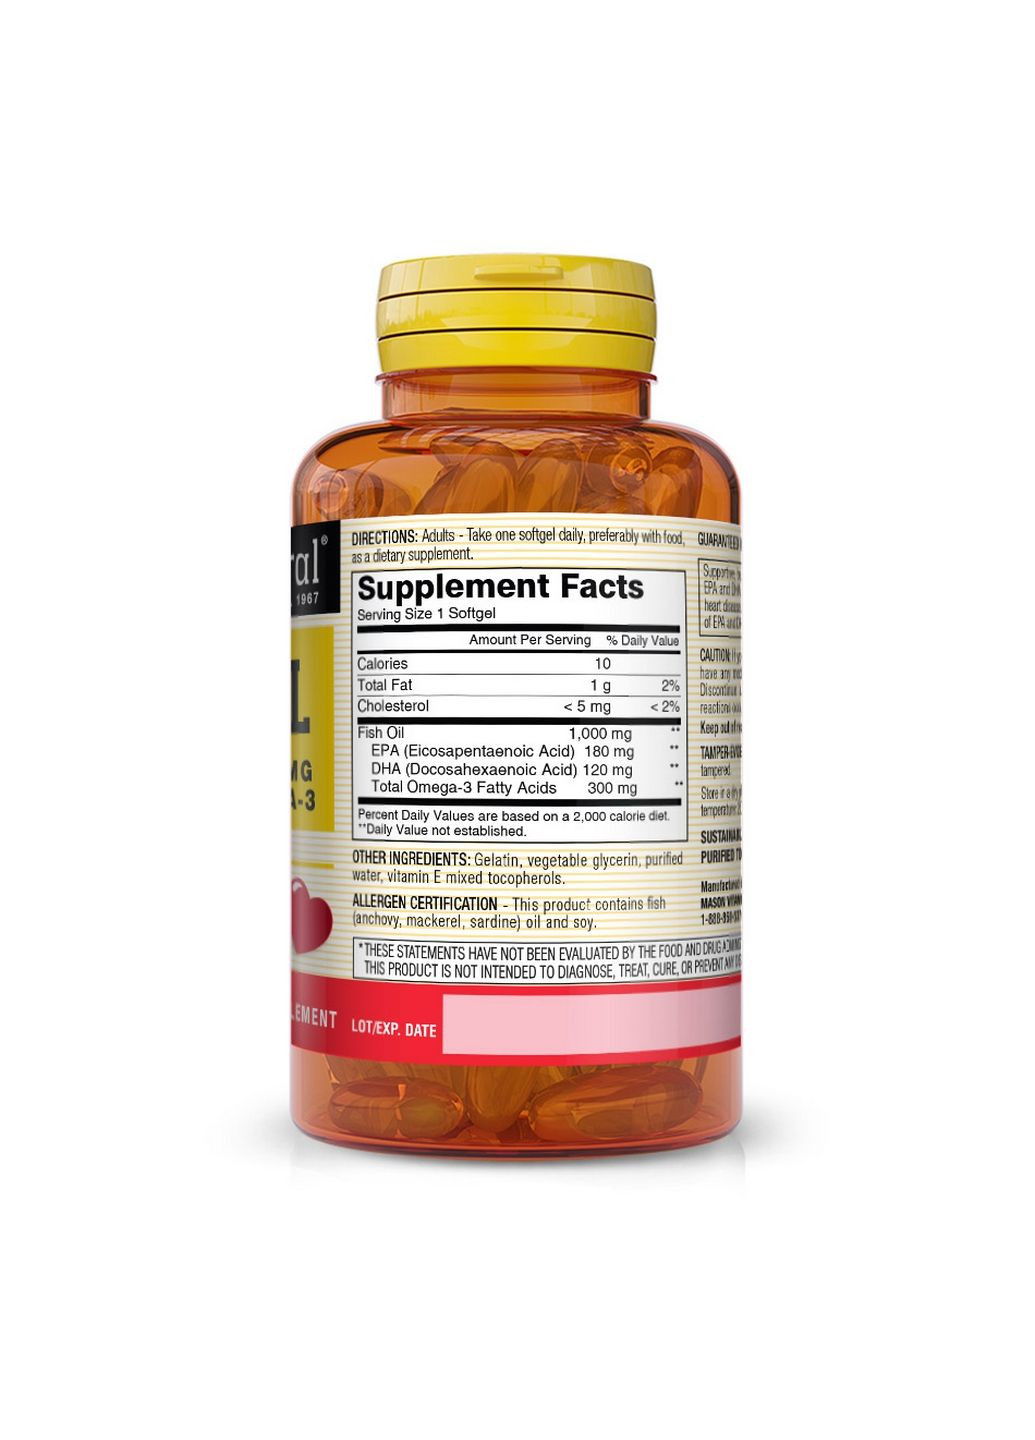 Жирні кислоти Fish Oil 1000 mg Omega 300 mg, 60 капсул Mason Natural (293421173)